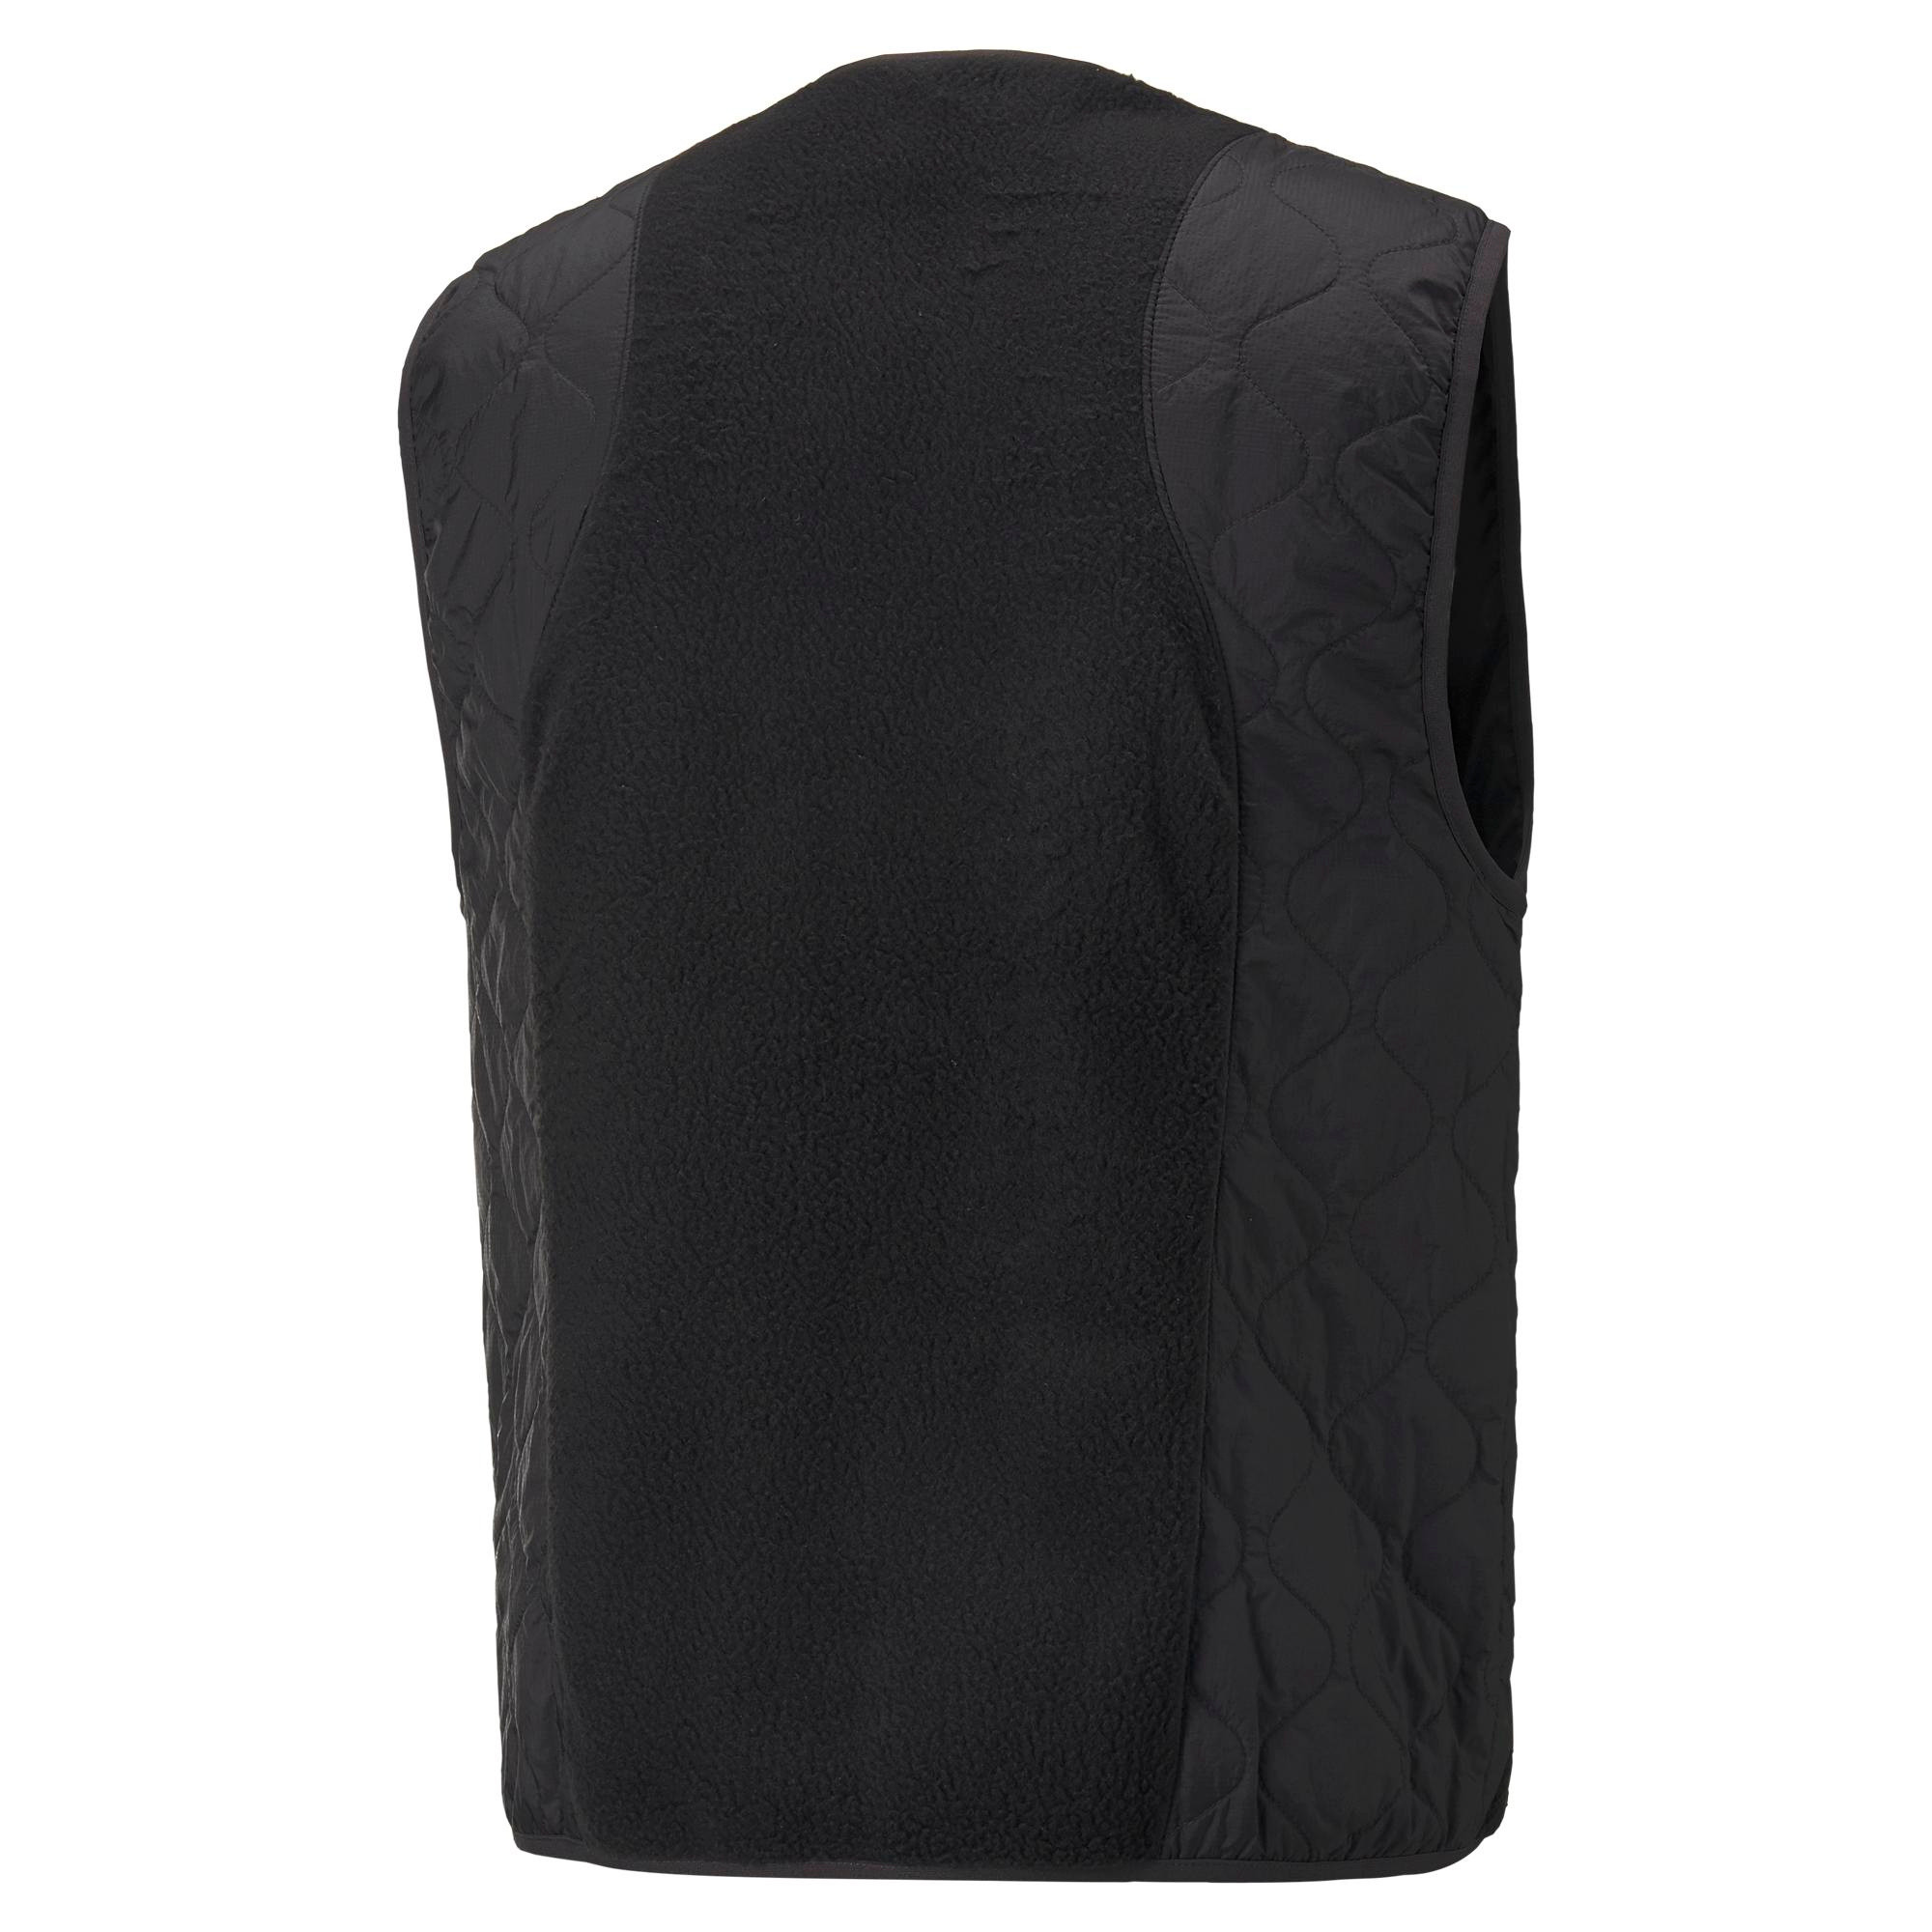 Puma x Market vest, Black, large image number 1